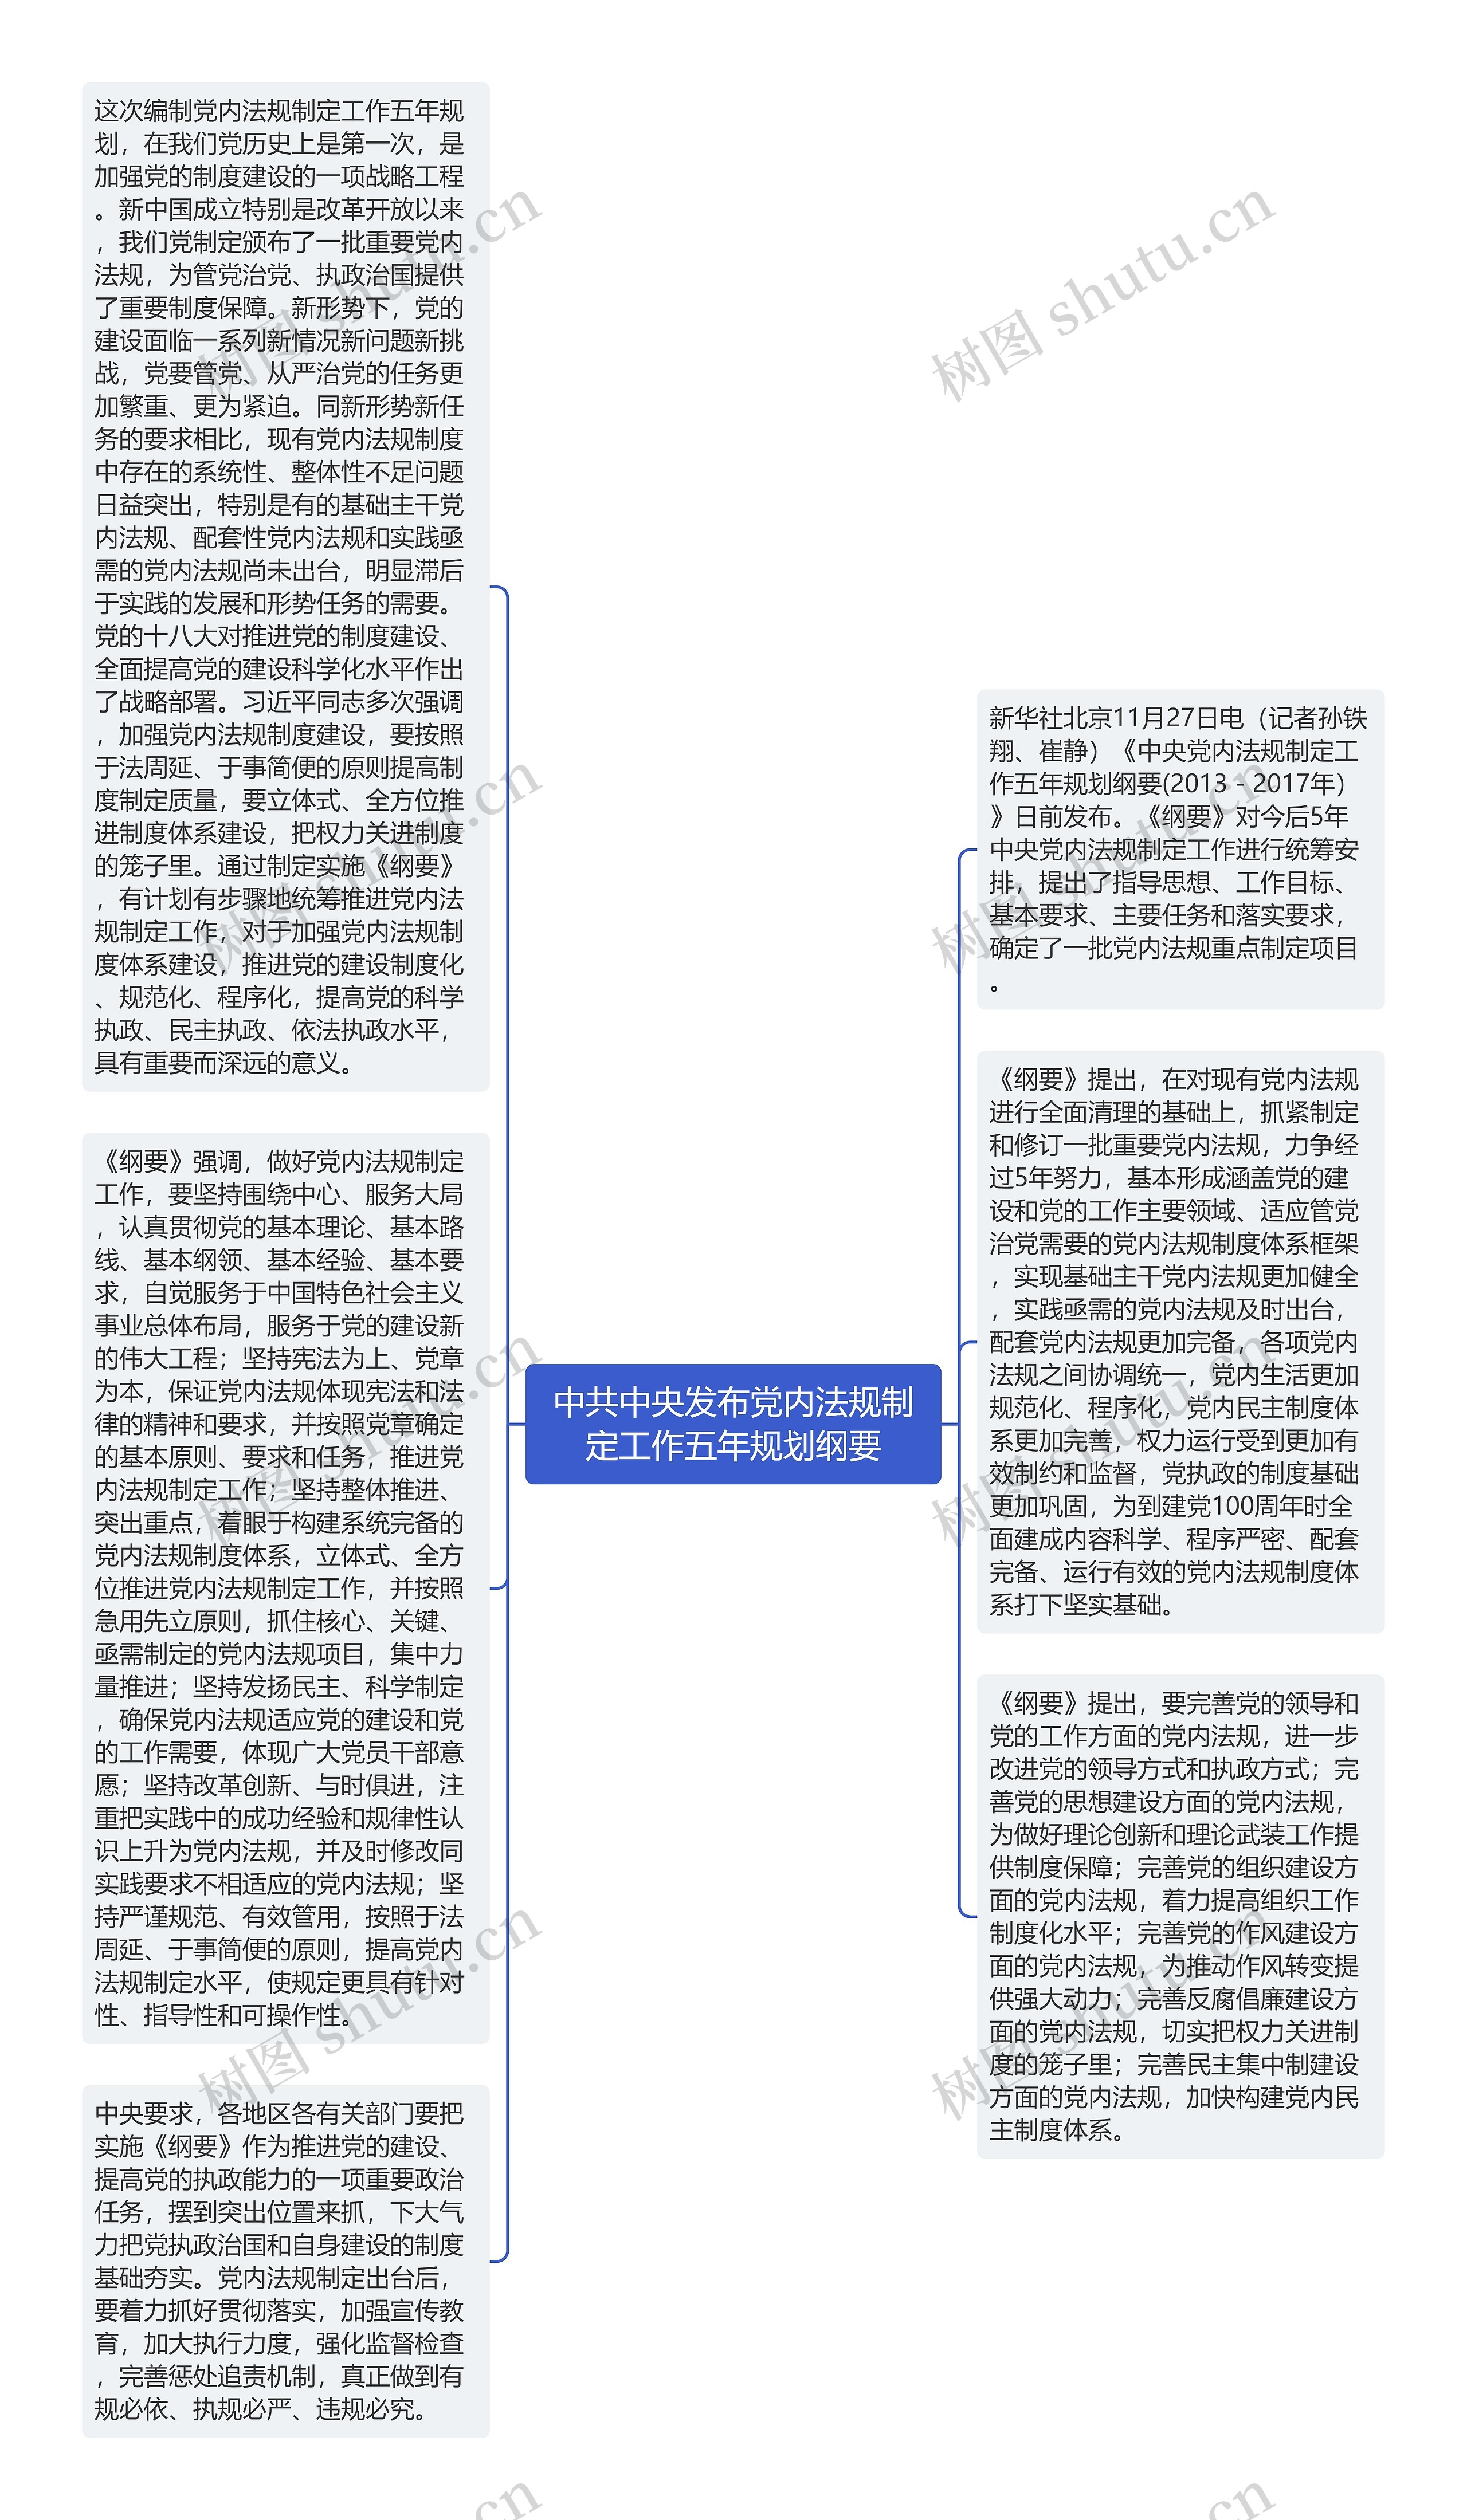 中共中央发布党内法规制定工作五年规划纲要